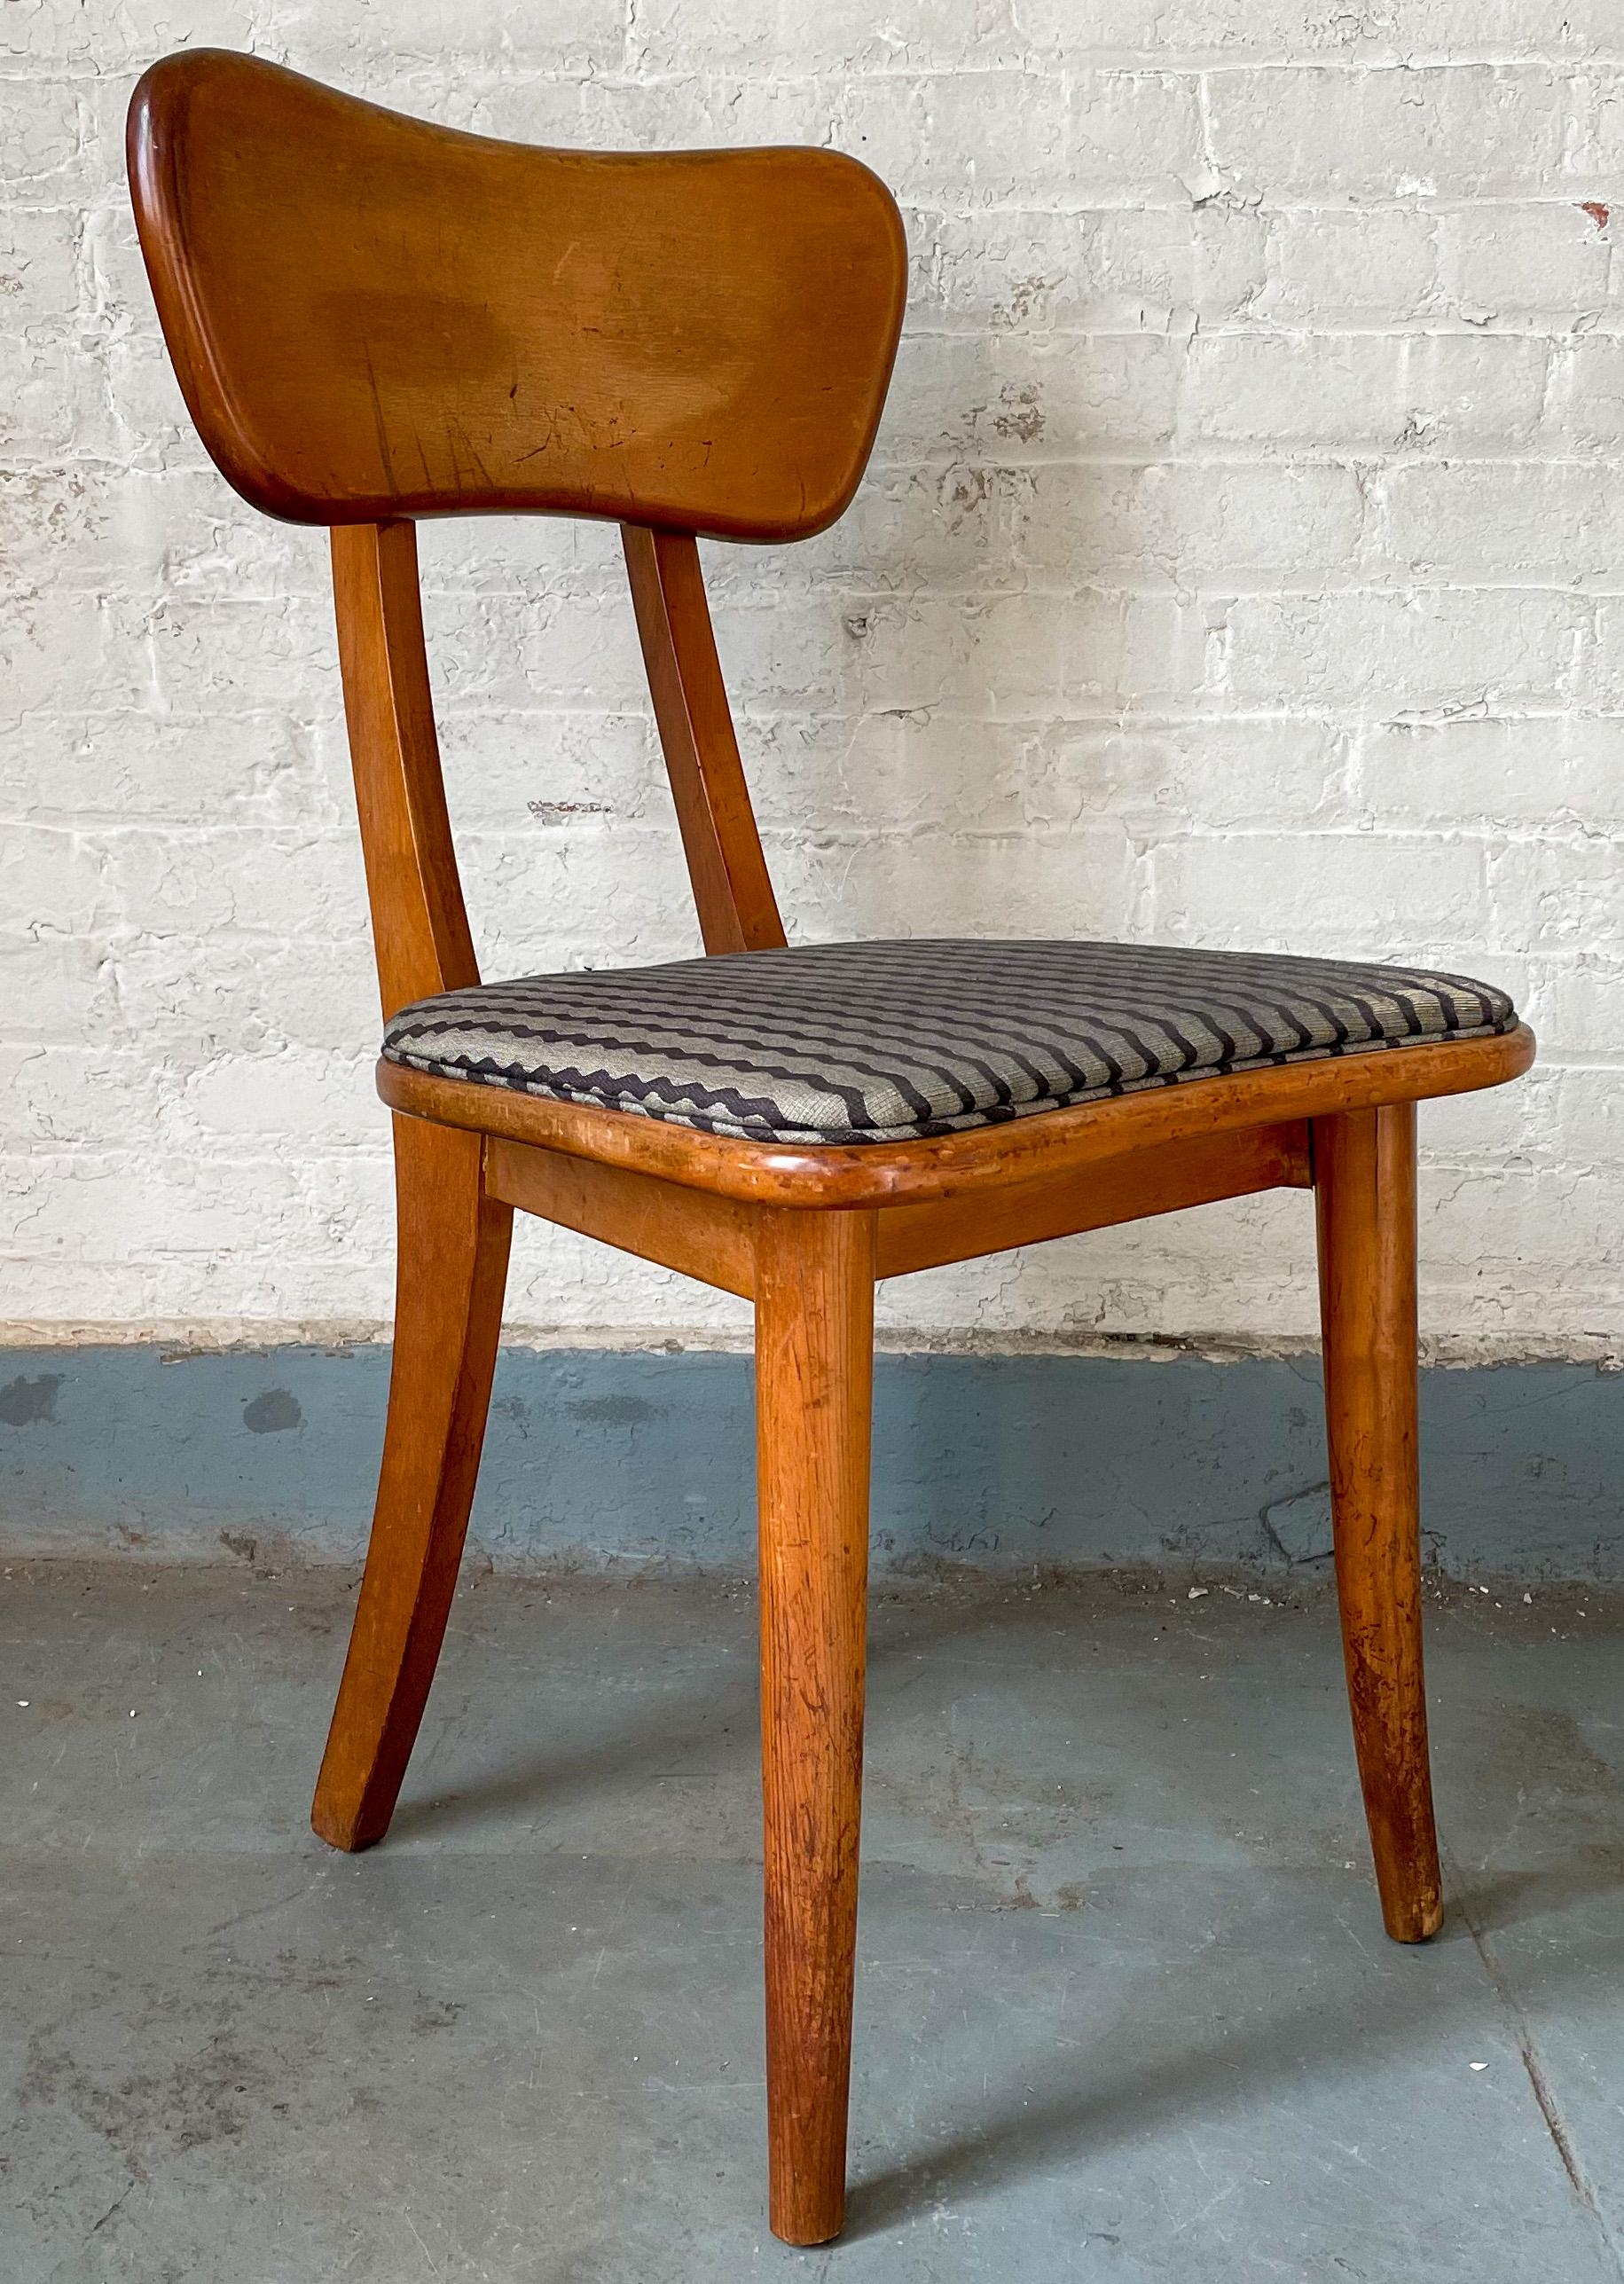 Seltener, preisgekrönter Stuhl mit verstellbarer Rückenlehne von Ann Hatfield und Martin Craig, entworfen für den MoMA-Wettbewerb 